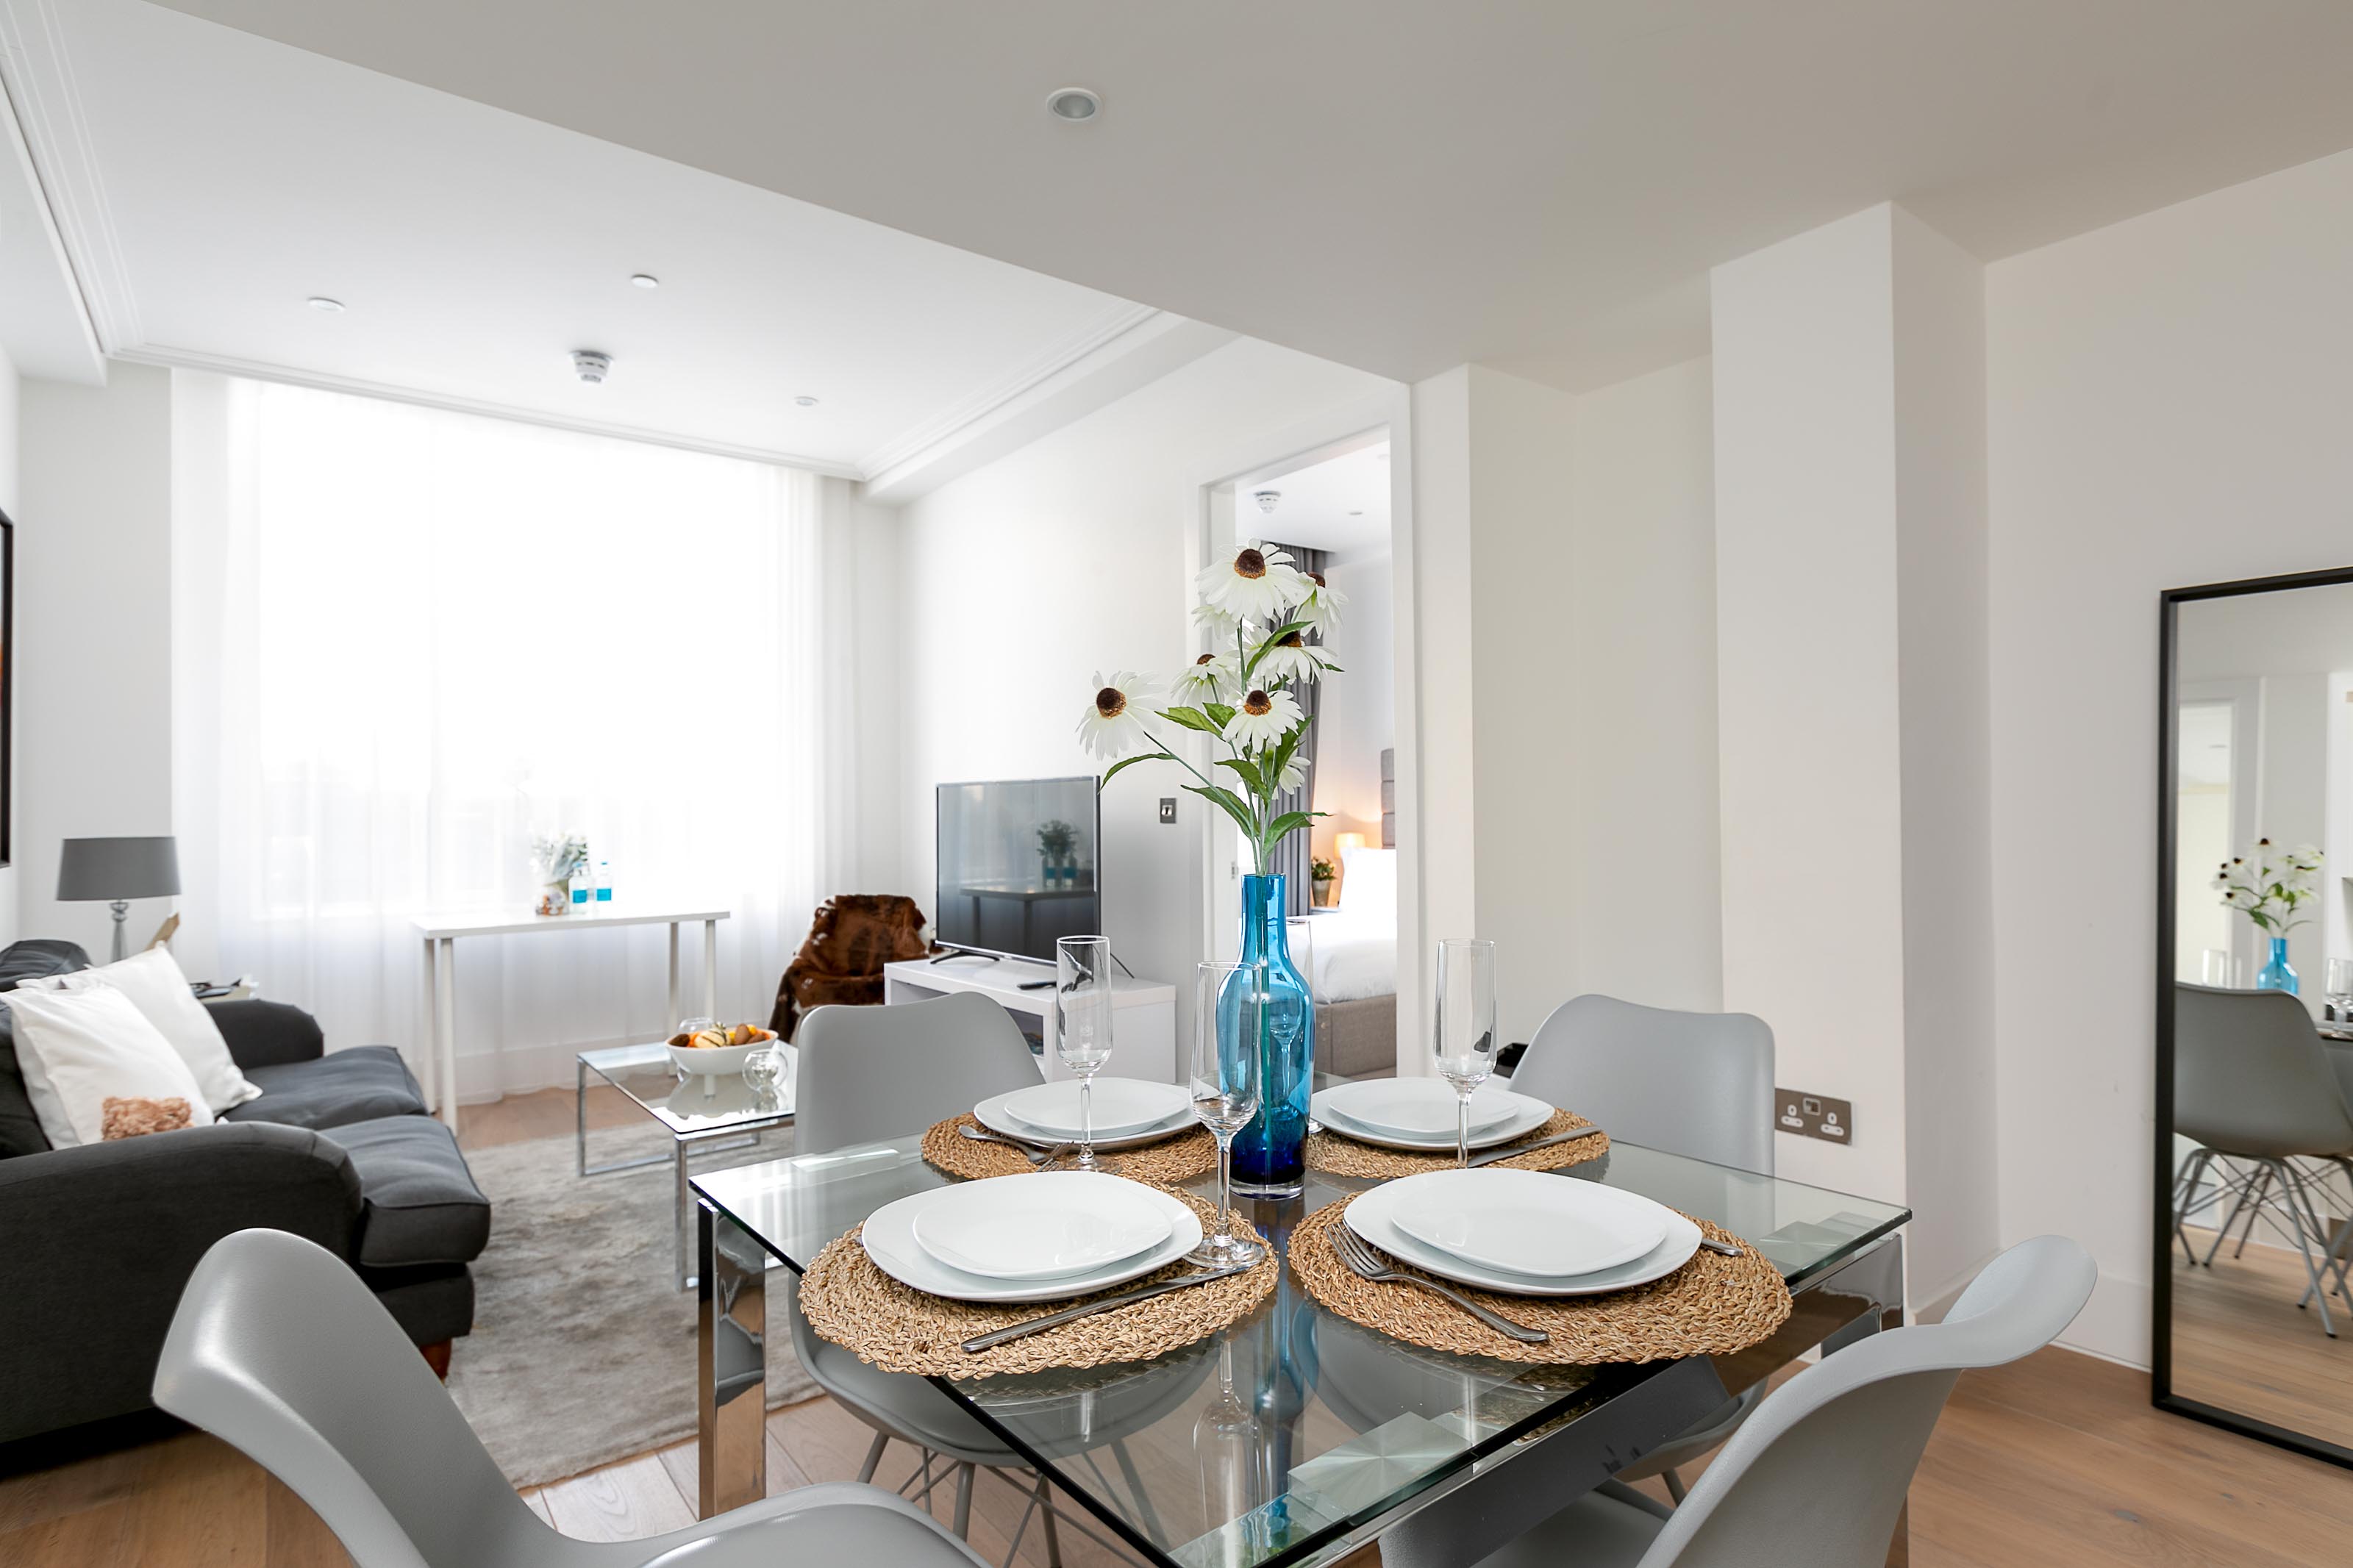 Lovelydays luxury service apartment rental - London - Covent Garden - Prince's House 605 - Lovelysuite - 2 bedrooms - 2 bathrooms - Luxury kitchen - Luxury living room - 4c0e72fb754c - Lovelydays